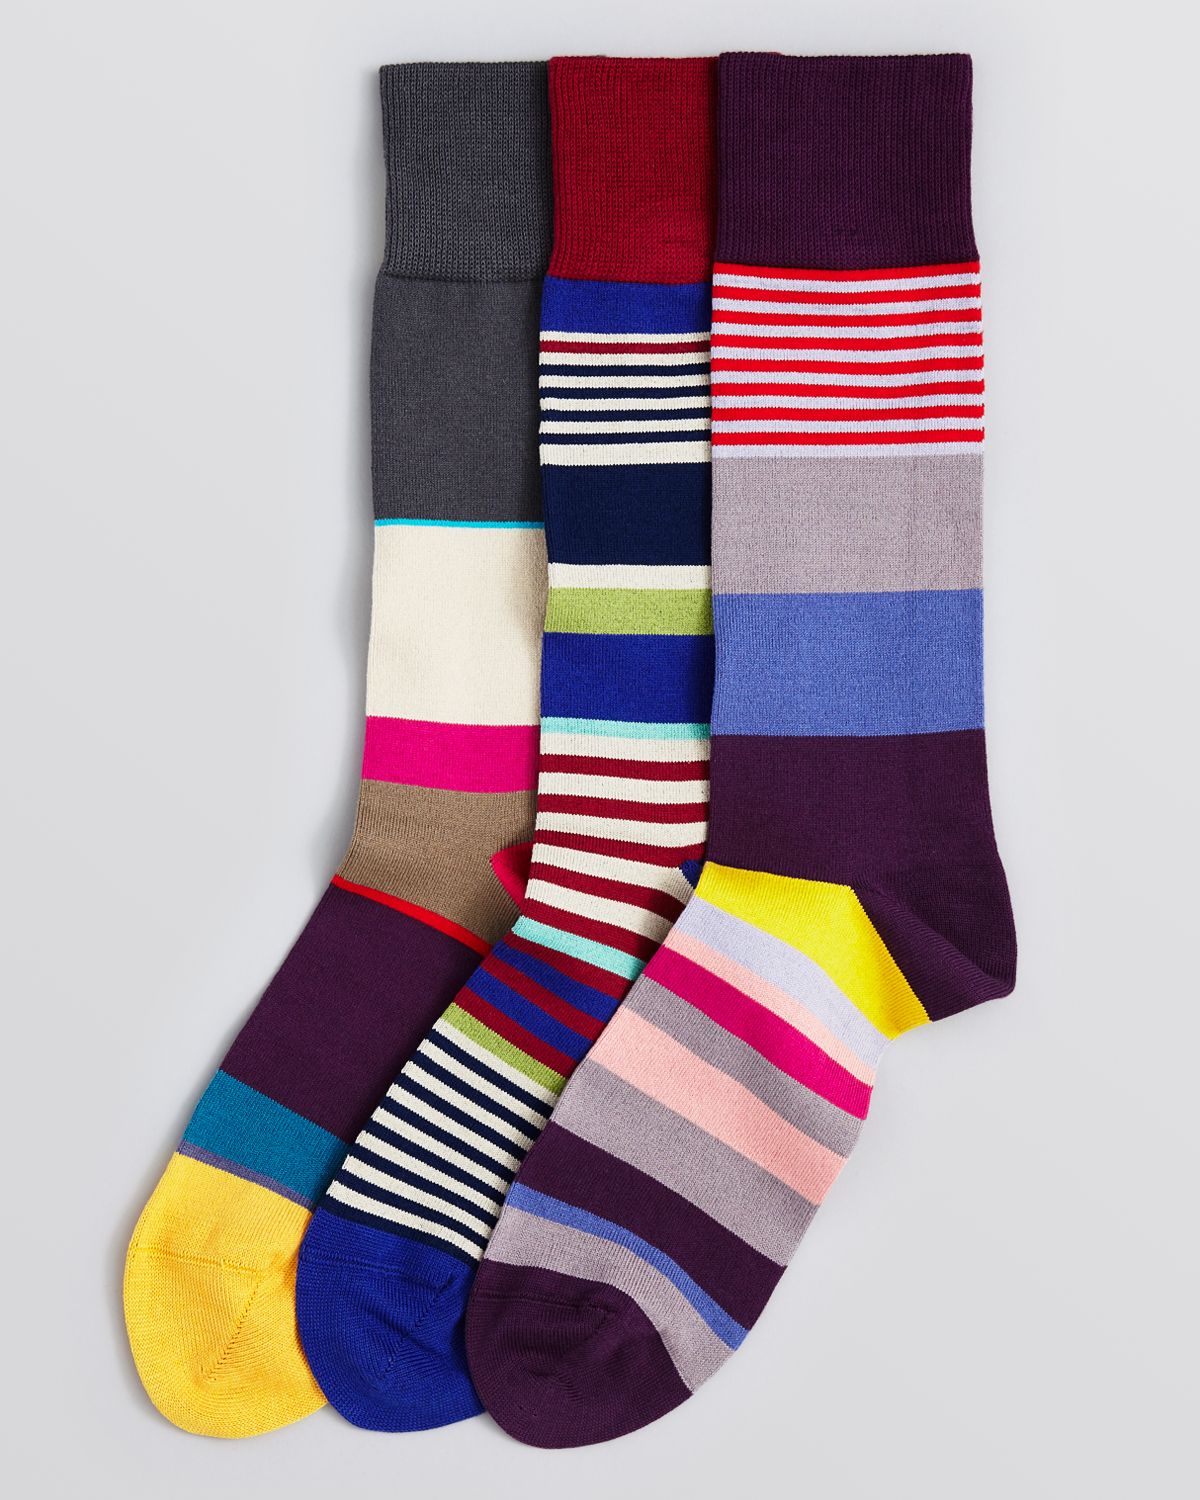 Lyst - Paul Smith Striped Socks Pack Of 3 for Men